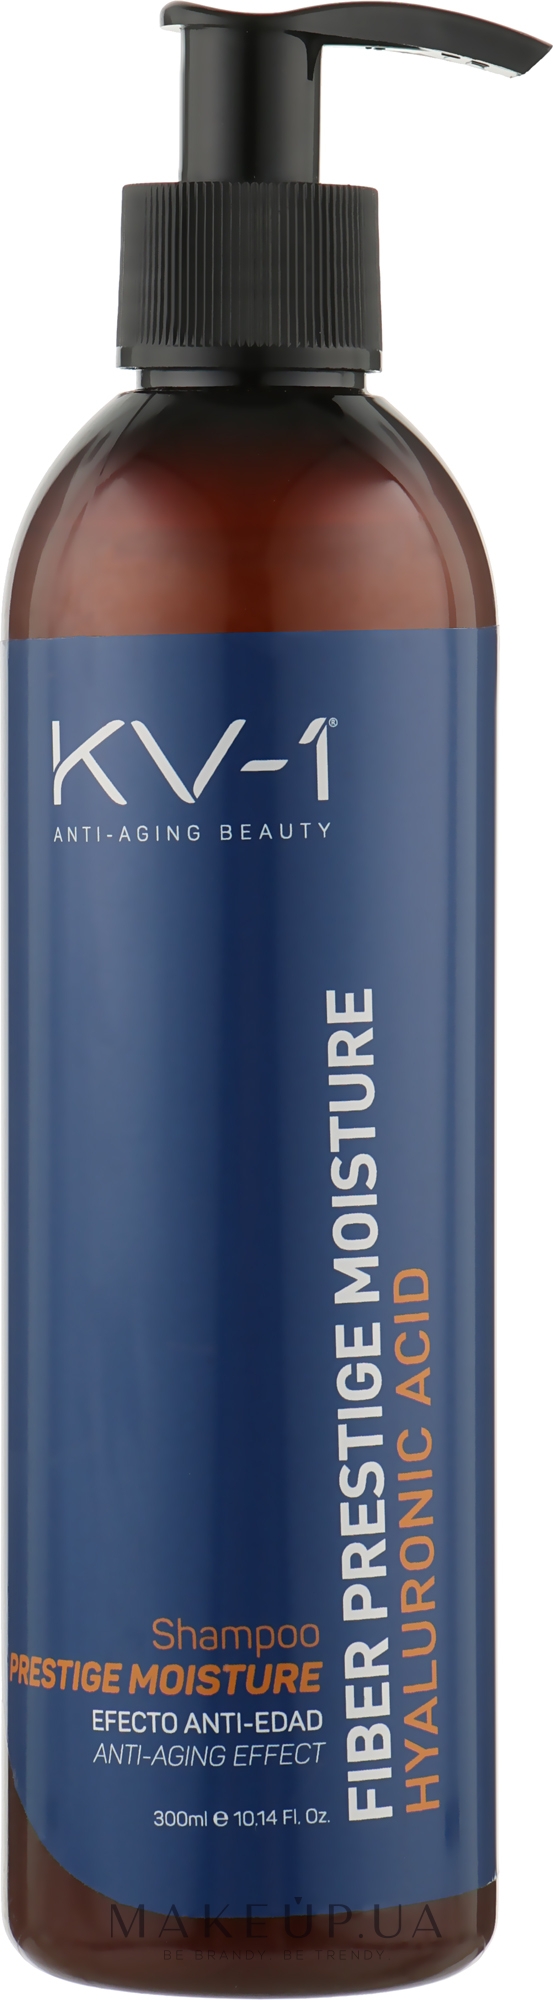 Шампунь з екстрактом меду, пантенолом і гіалуроновою кислотою - KV-1 Fiber Prestige Moisture Shampoo — фото 300ml